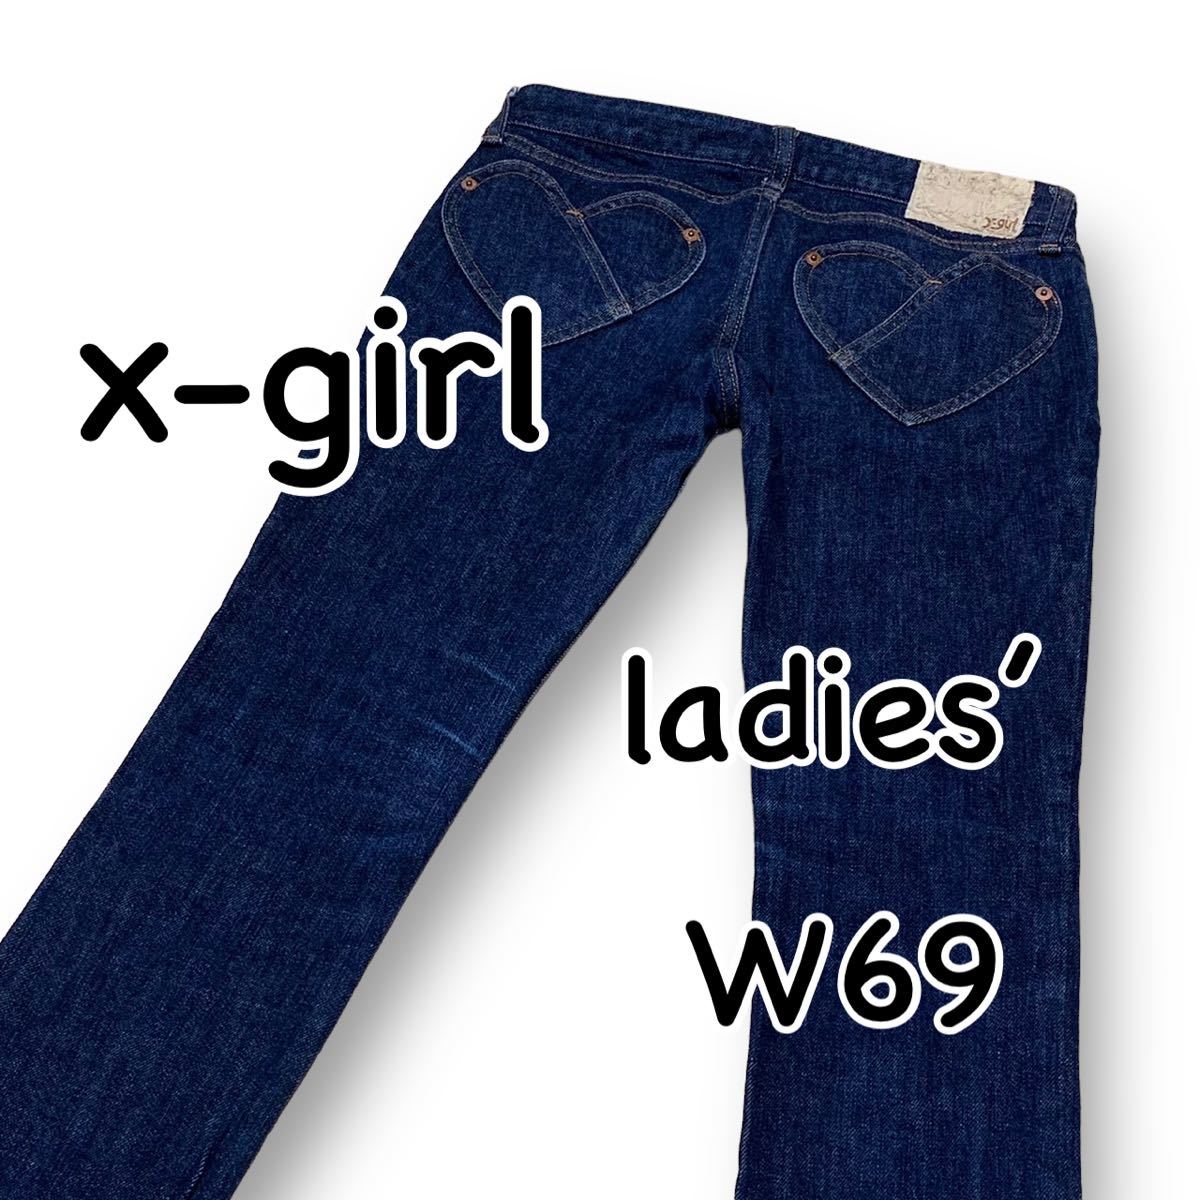  X-girl x-girl обтягивающий стрейч размер 1 талия 69cm M размер темно синий женский джинсы Denim M1851